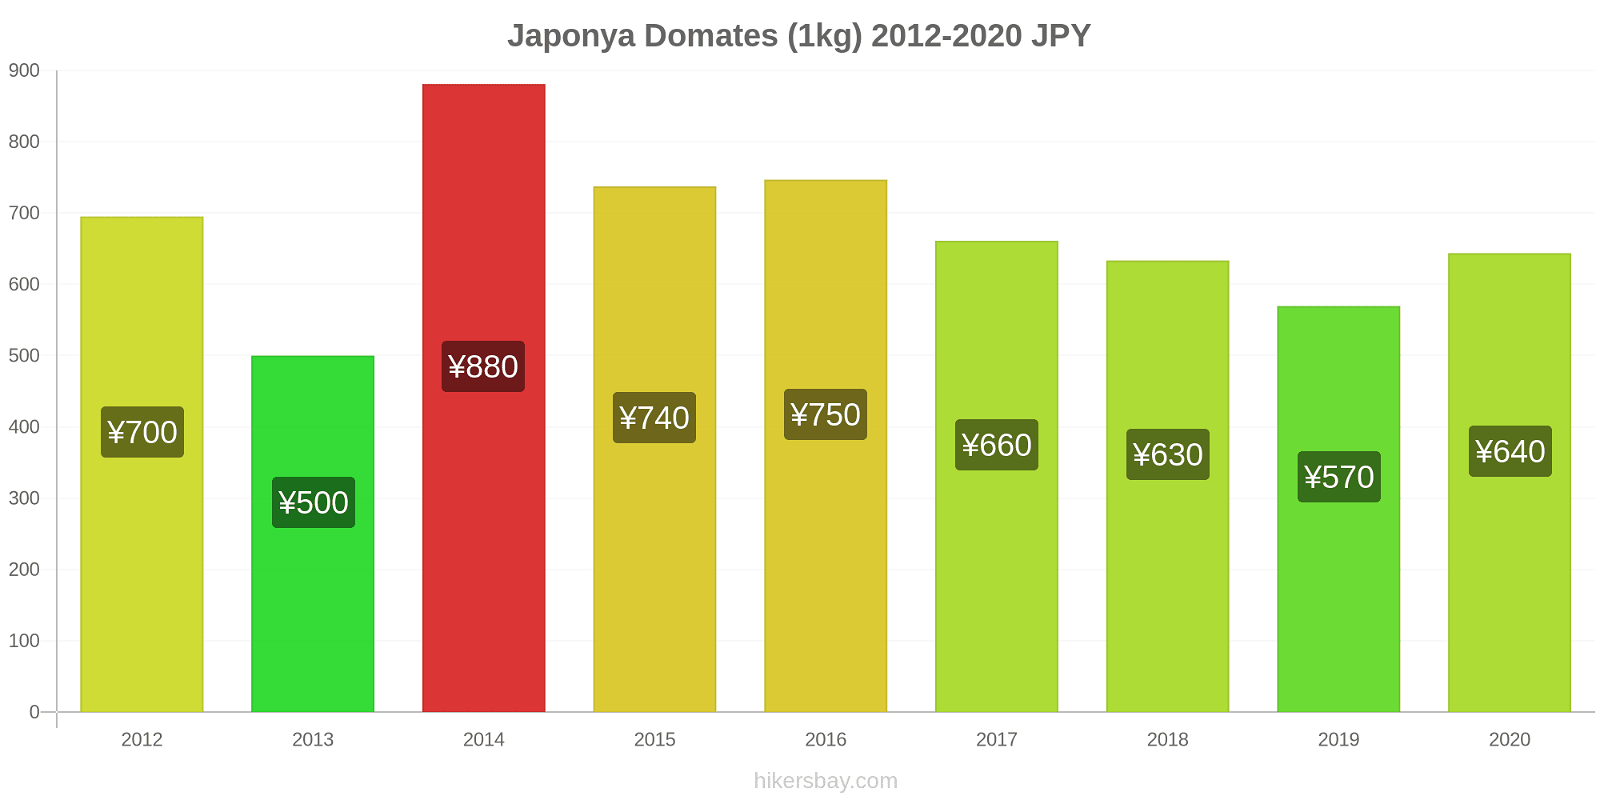 Japonya fiyat değişiklikleri Domates (1kg) hikersbay.com